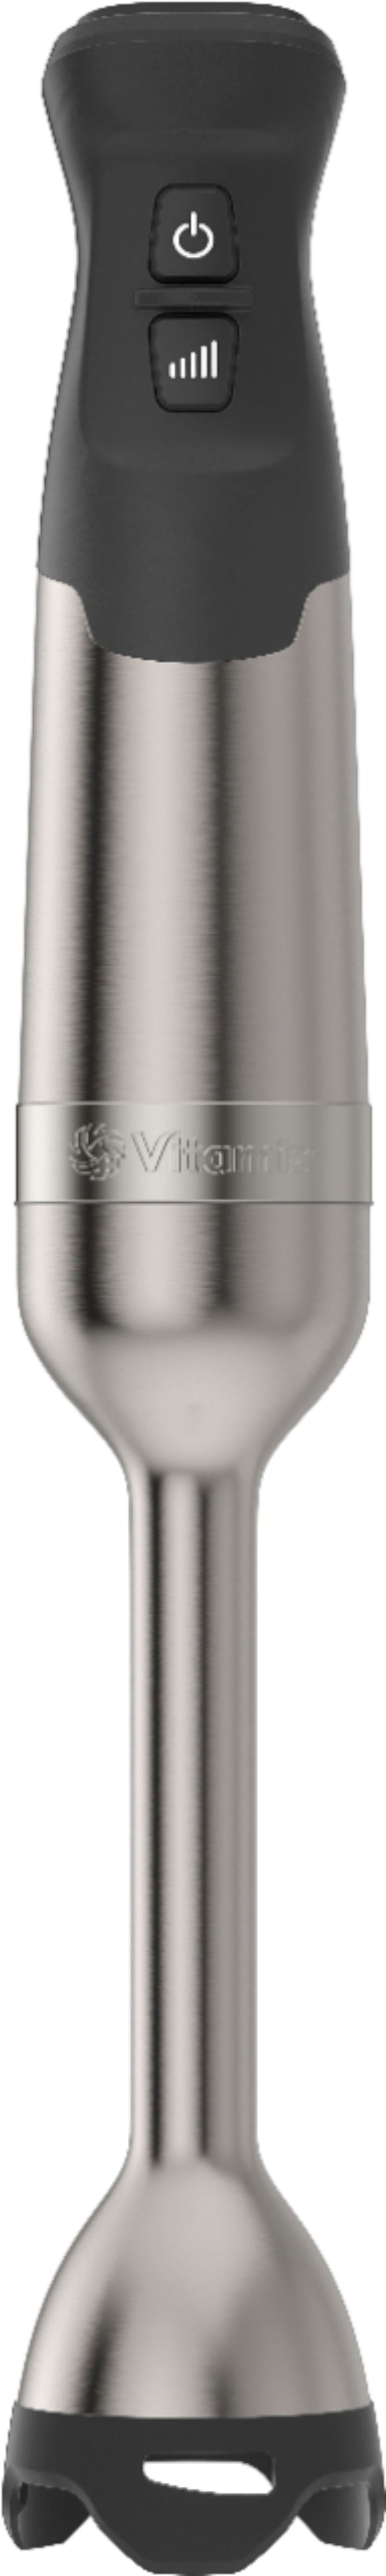 Vitamix - Immersion Blender - Stainless Steel_6